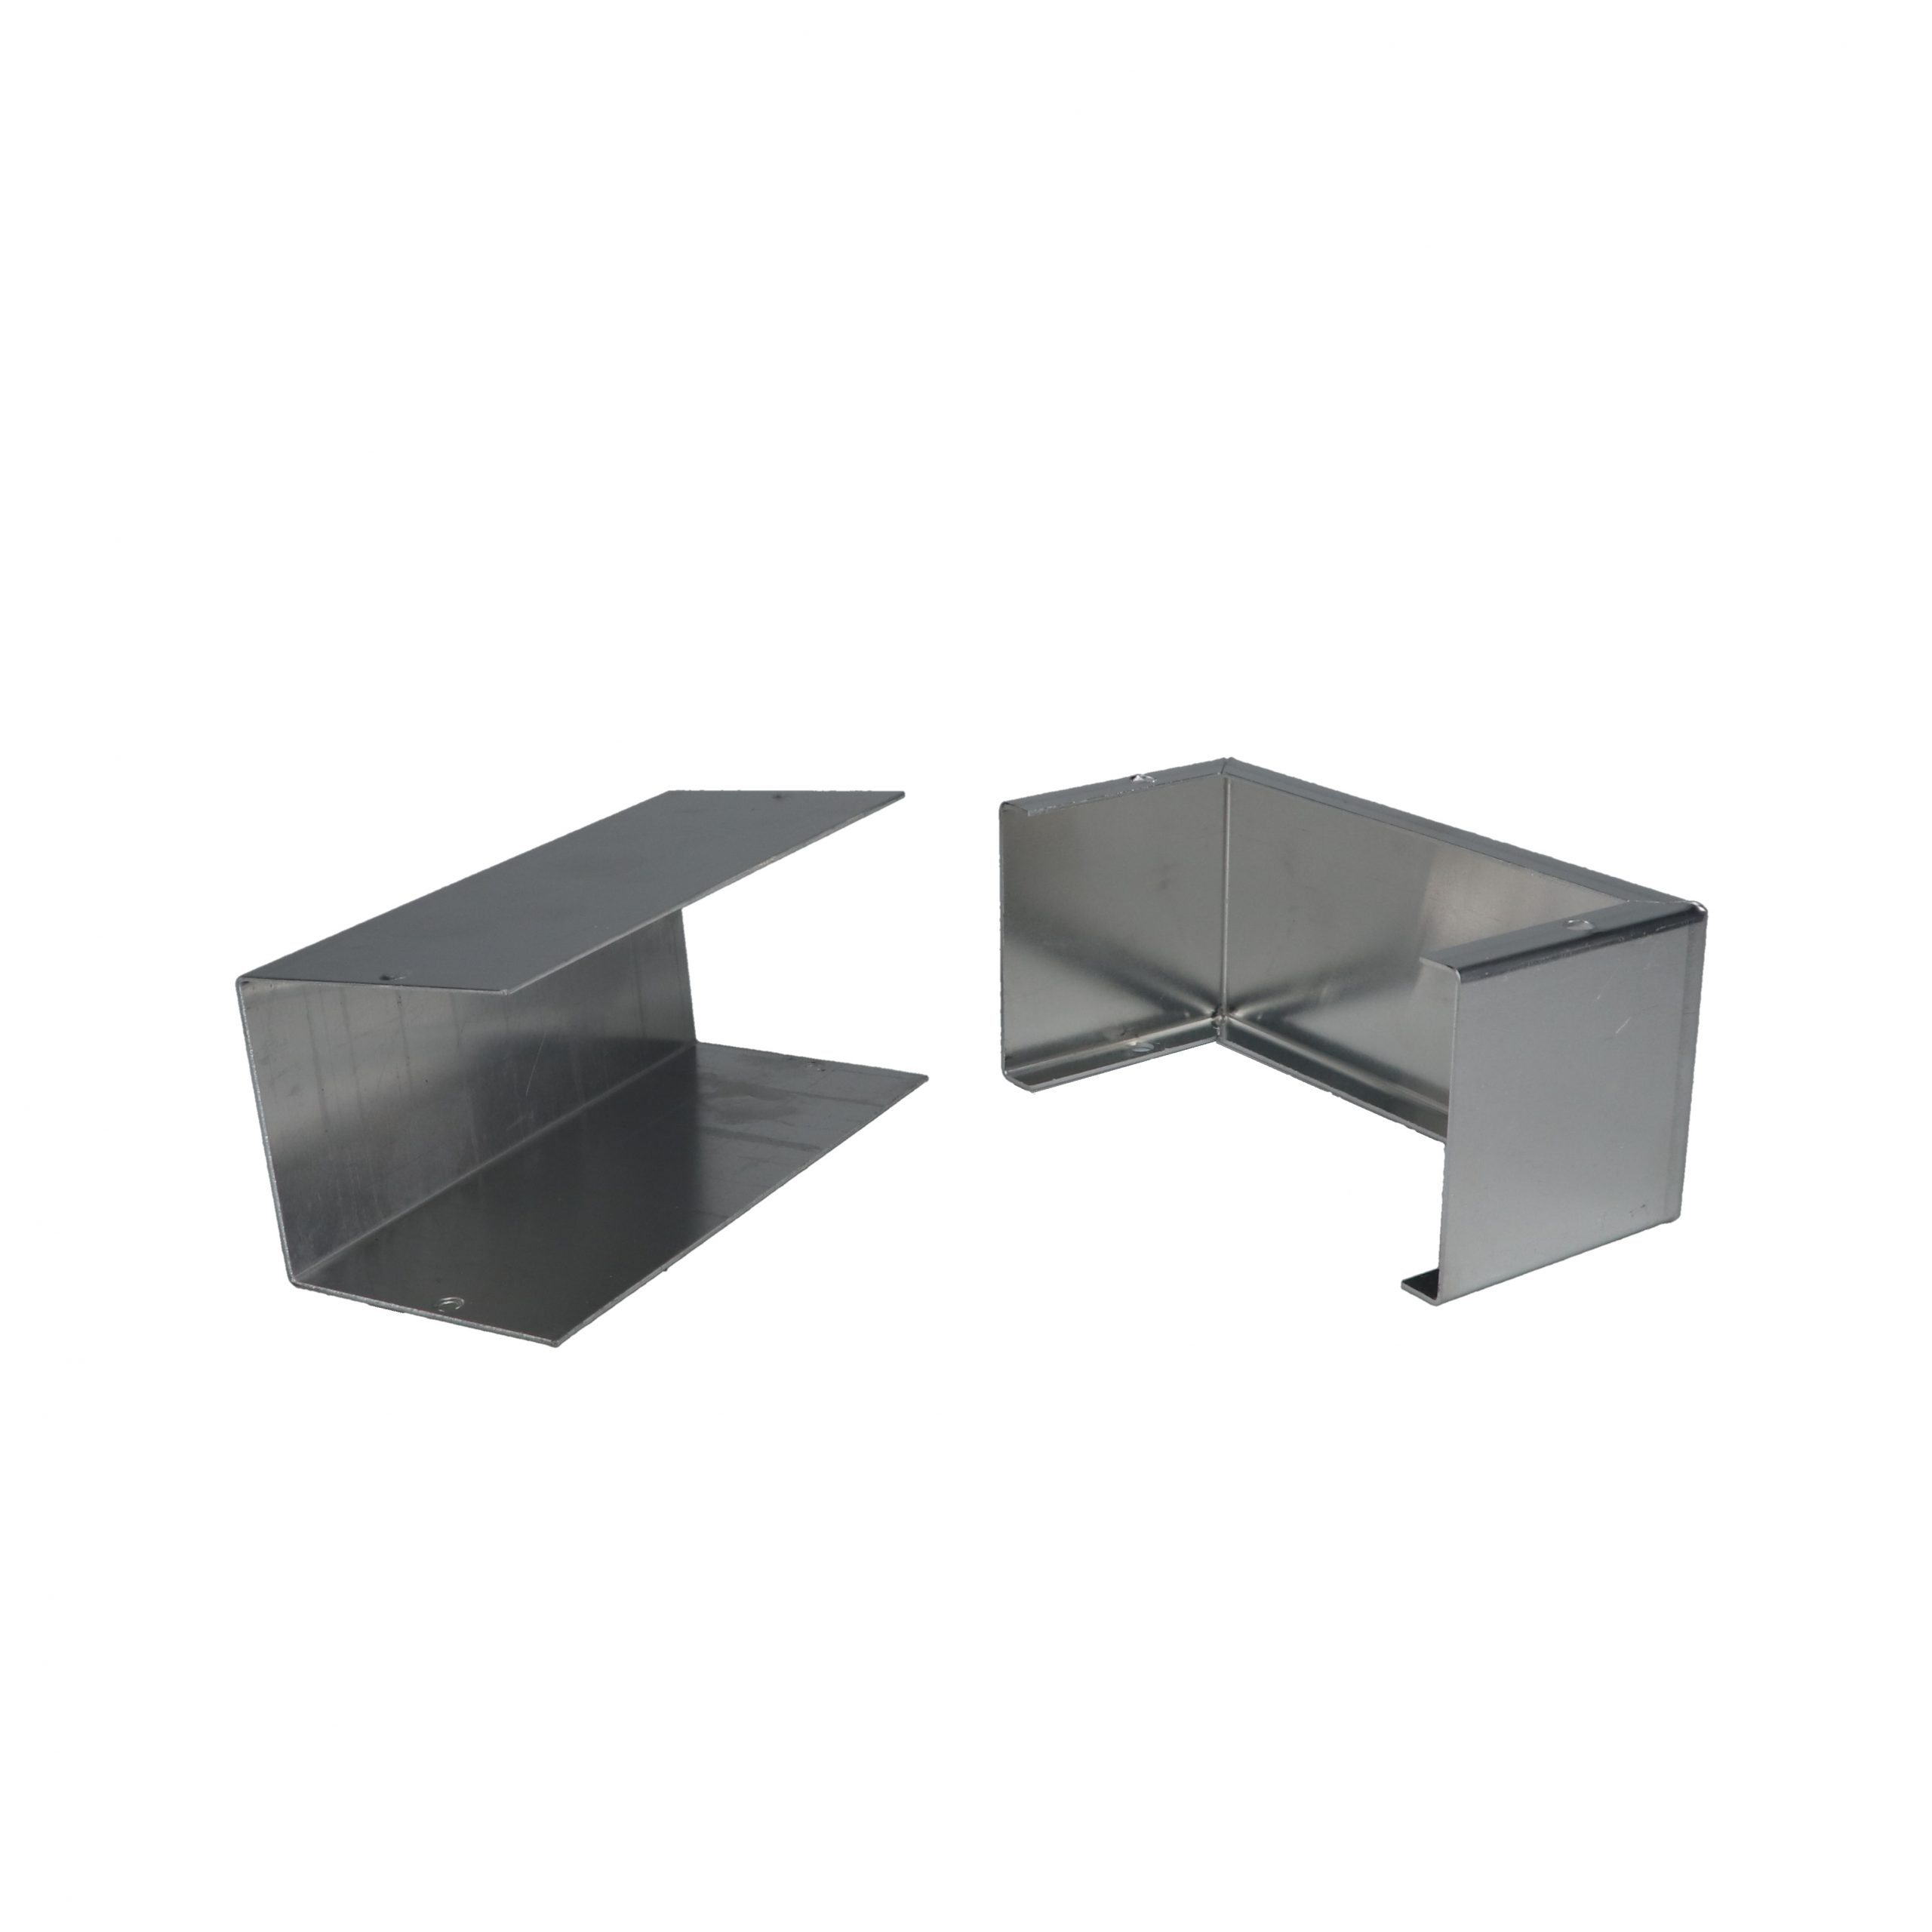 Minibox Small Metal Box CU-3004-A - Bud Industries